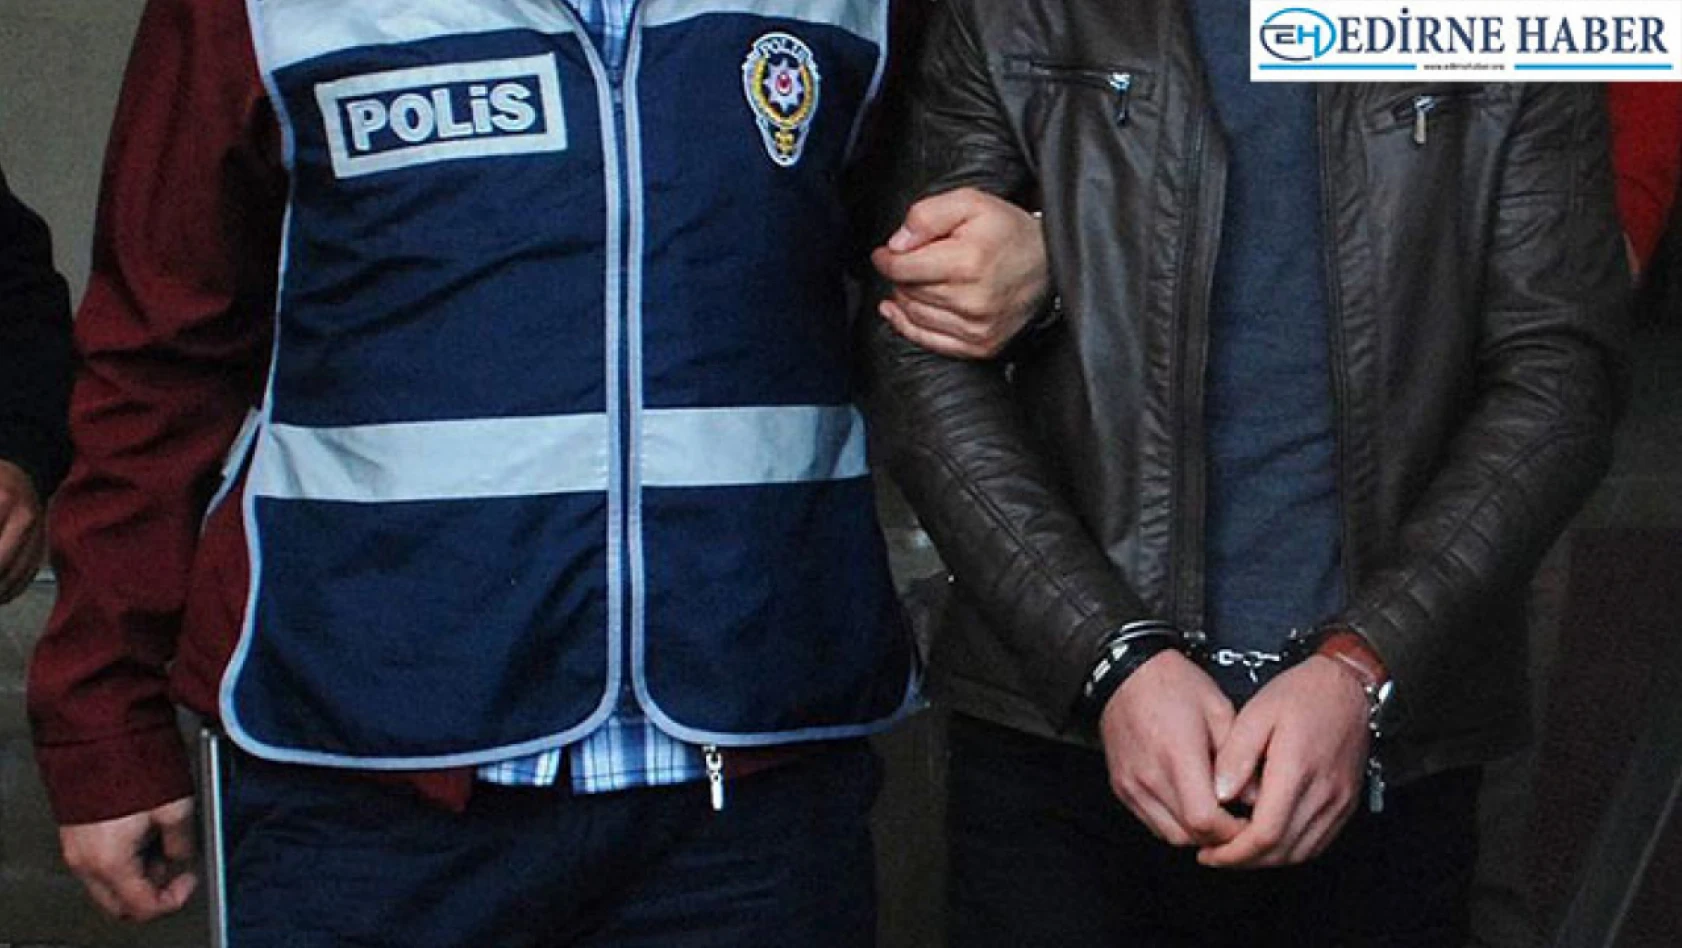 Edirne'de araç lastiklerine zarar veren şüpheli gözaltına alındı